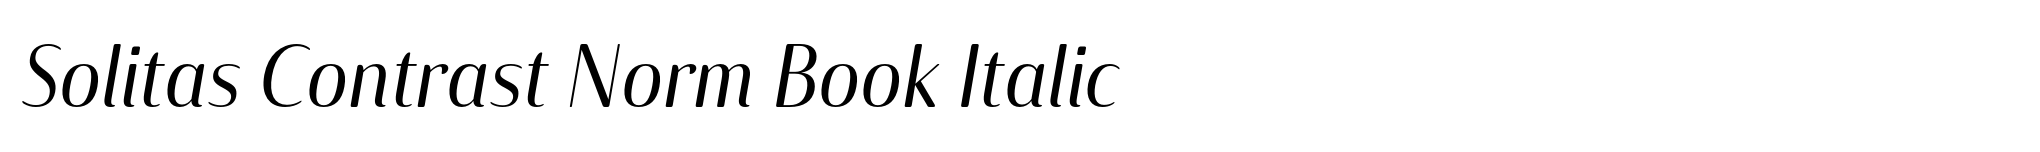 Solitas Contrast Norm Book Italic image